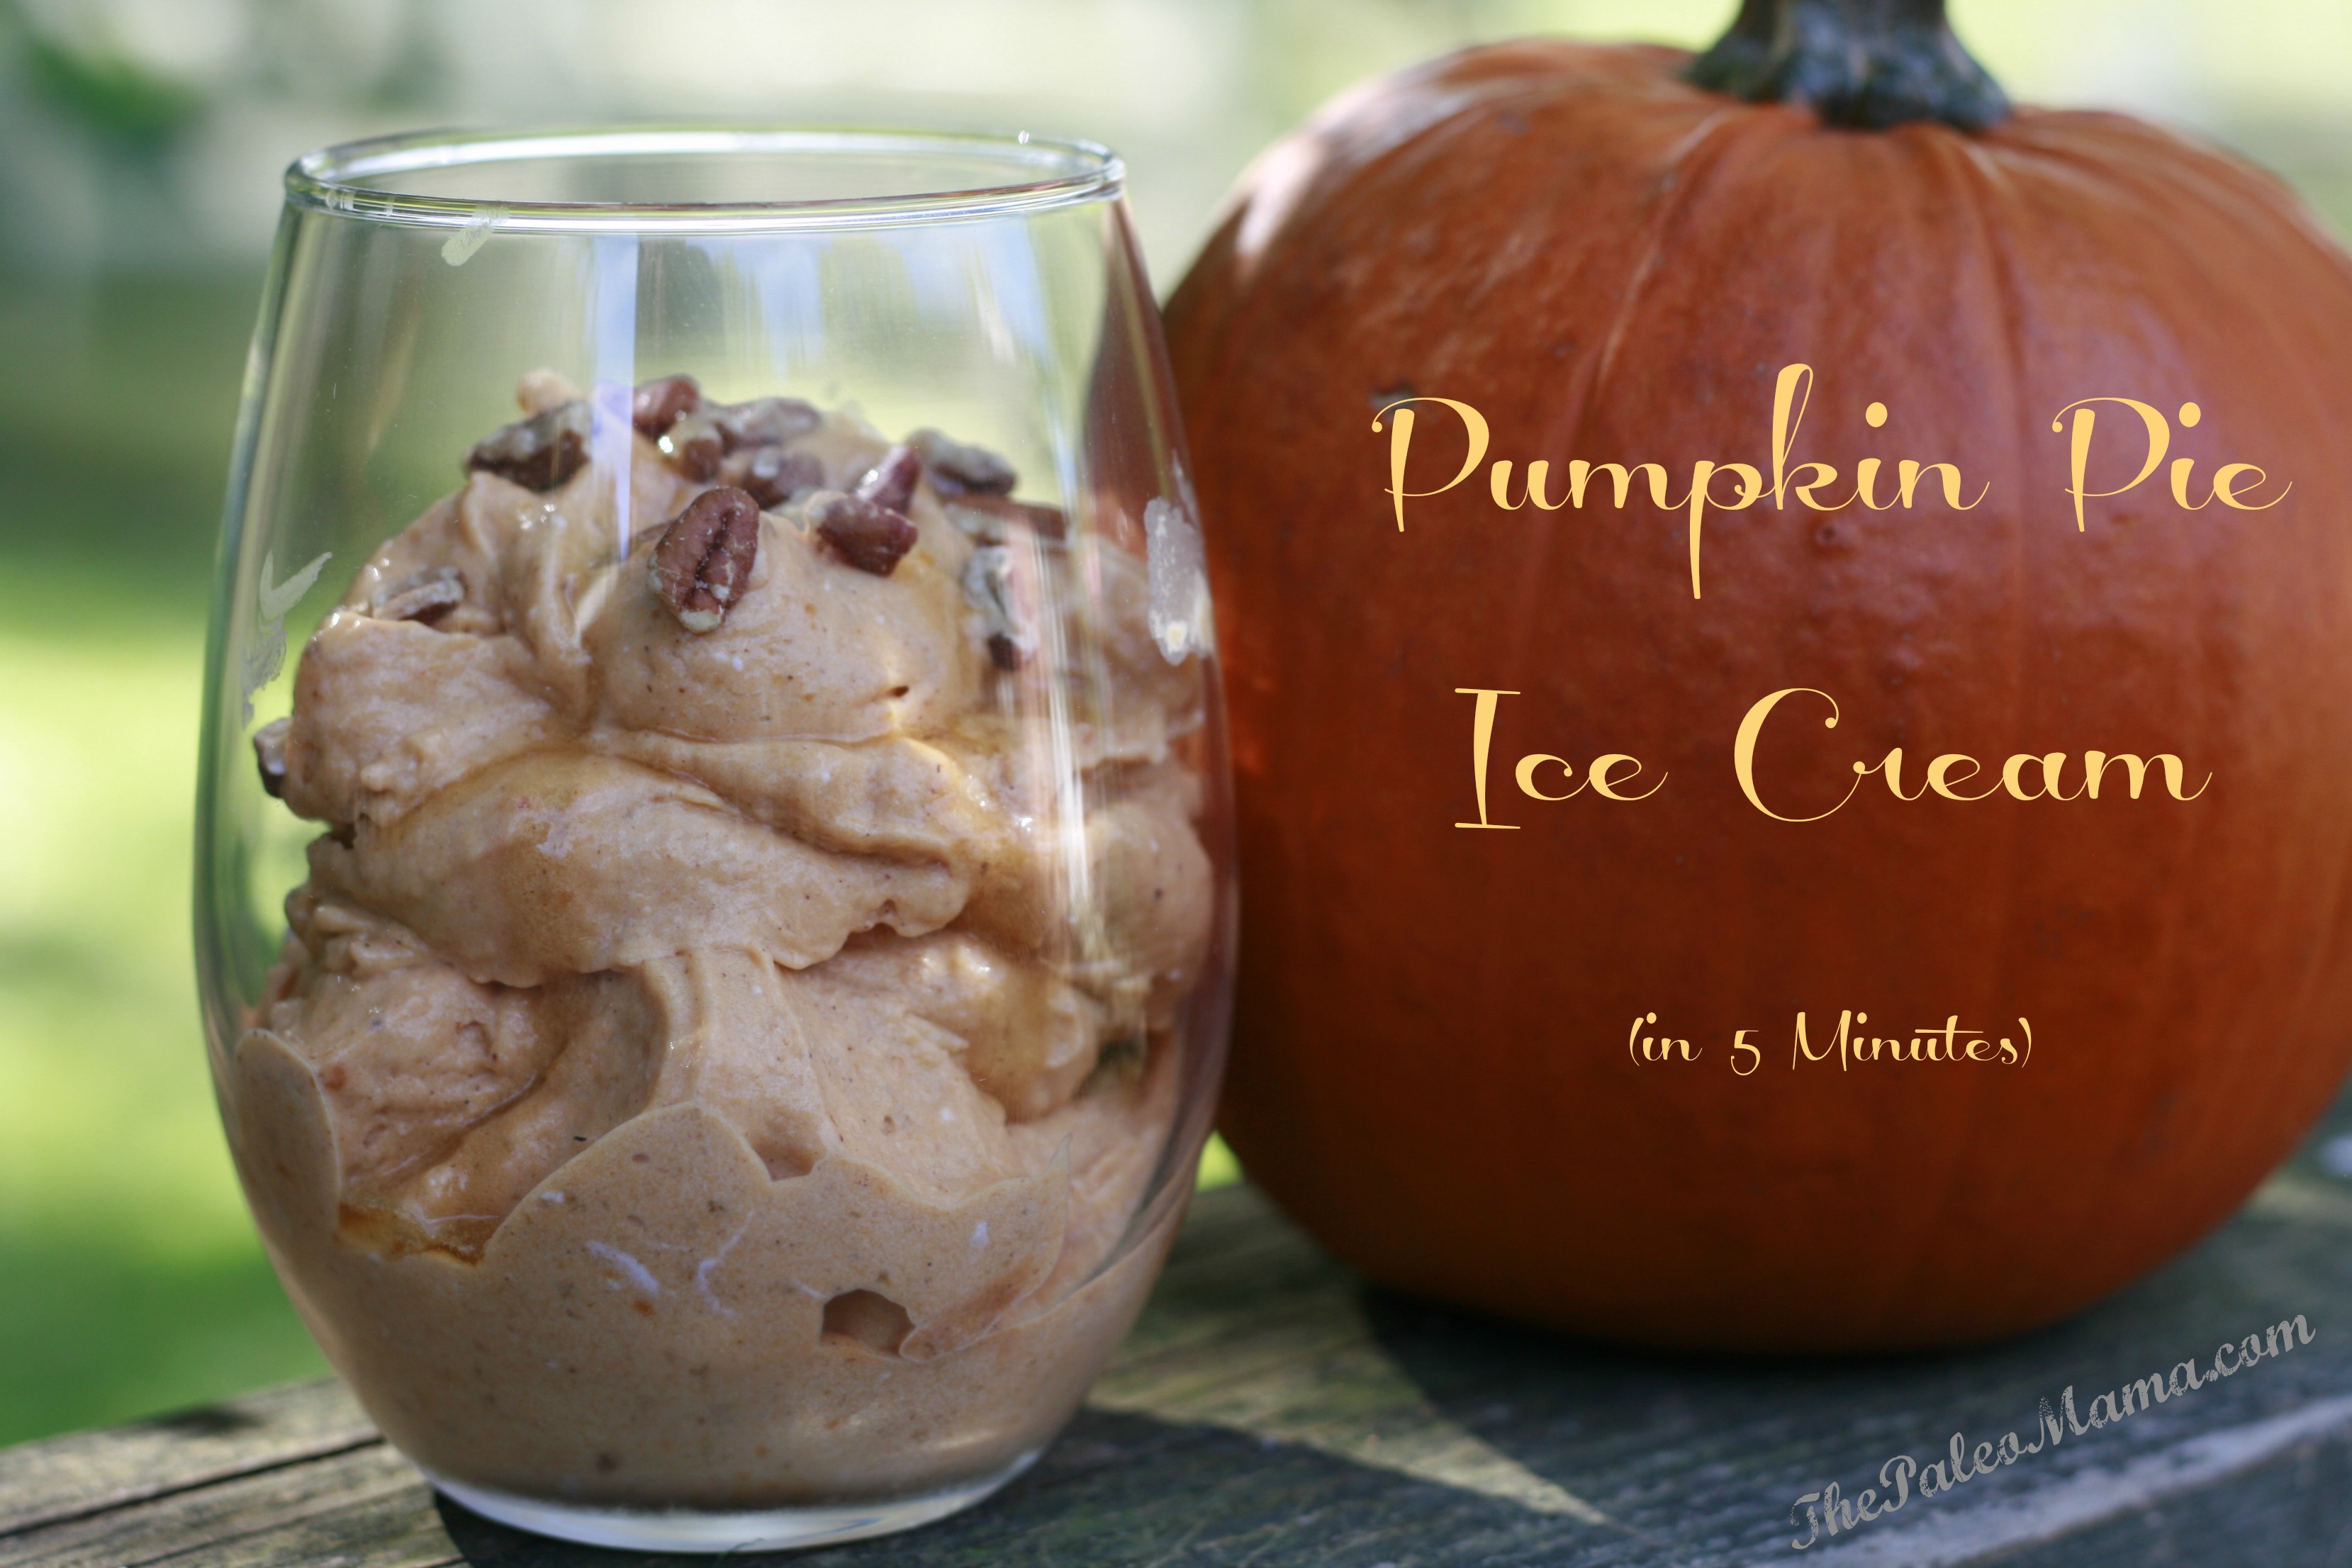 Pumpkin Pie Ice Cream in 5 Minutes!